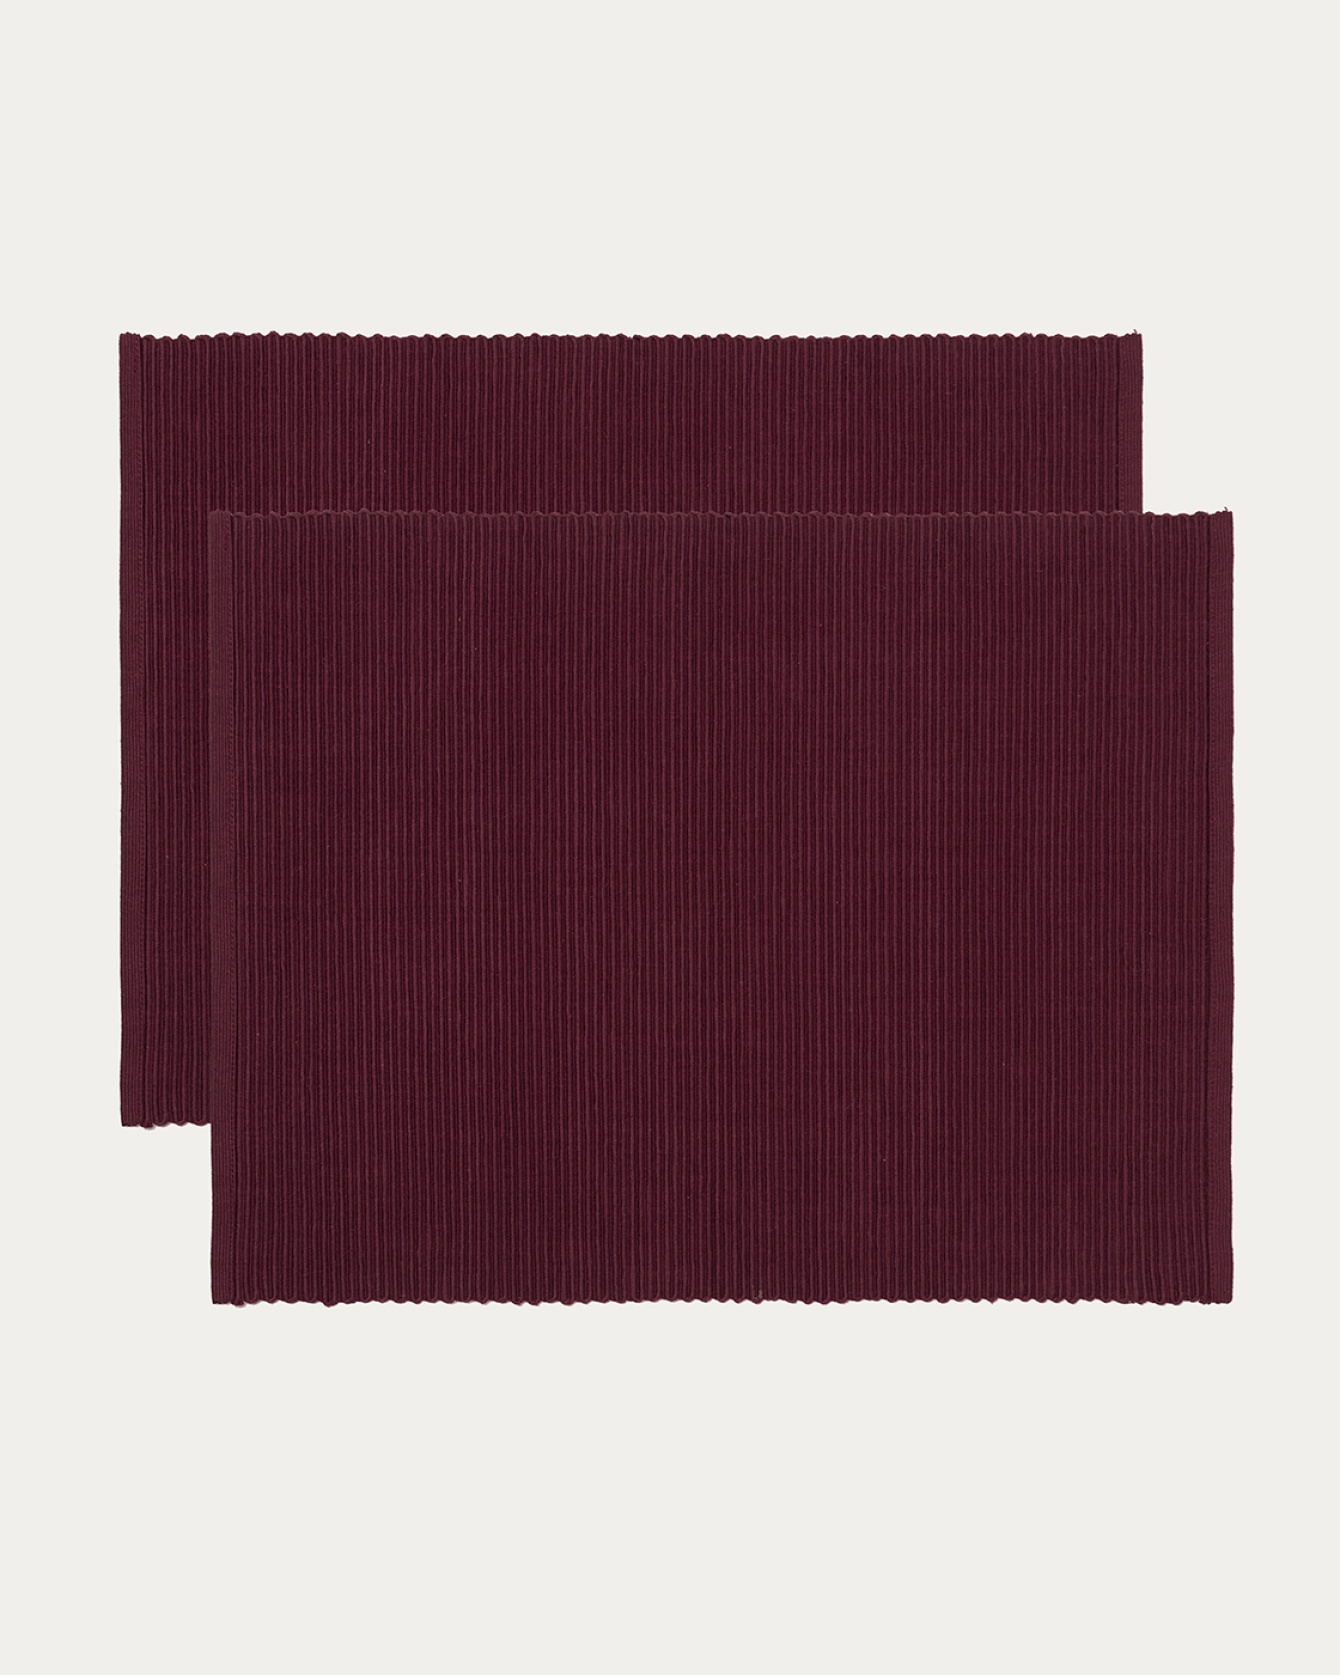 Produktbild burgundyröd UNI bordstablett av mjuk bomull i ribbad kvalité från LINUM DESIGN. Storlek 35x46 cm och säljs i 2-pack.